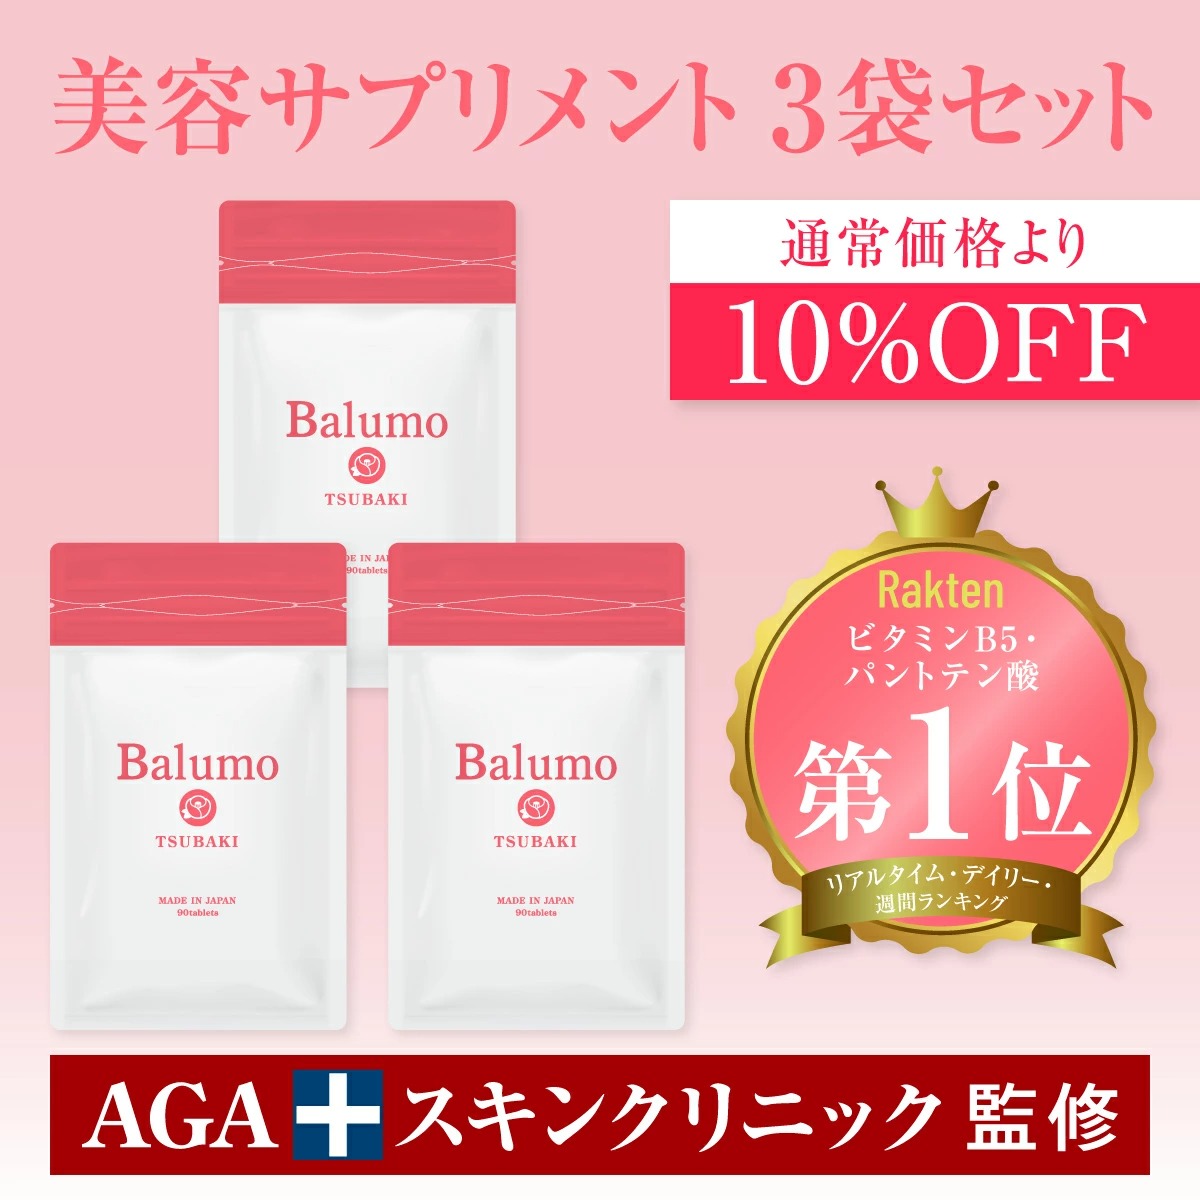 サプリメント 女性 3袋セット Balumo TSUBAKI バルモツバキ AGA